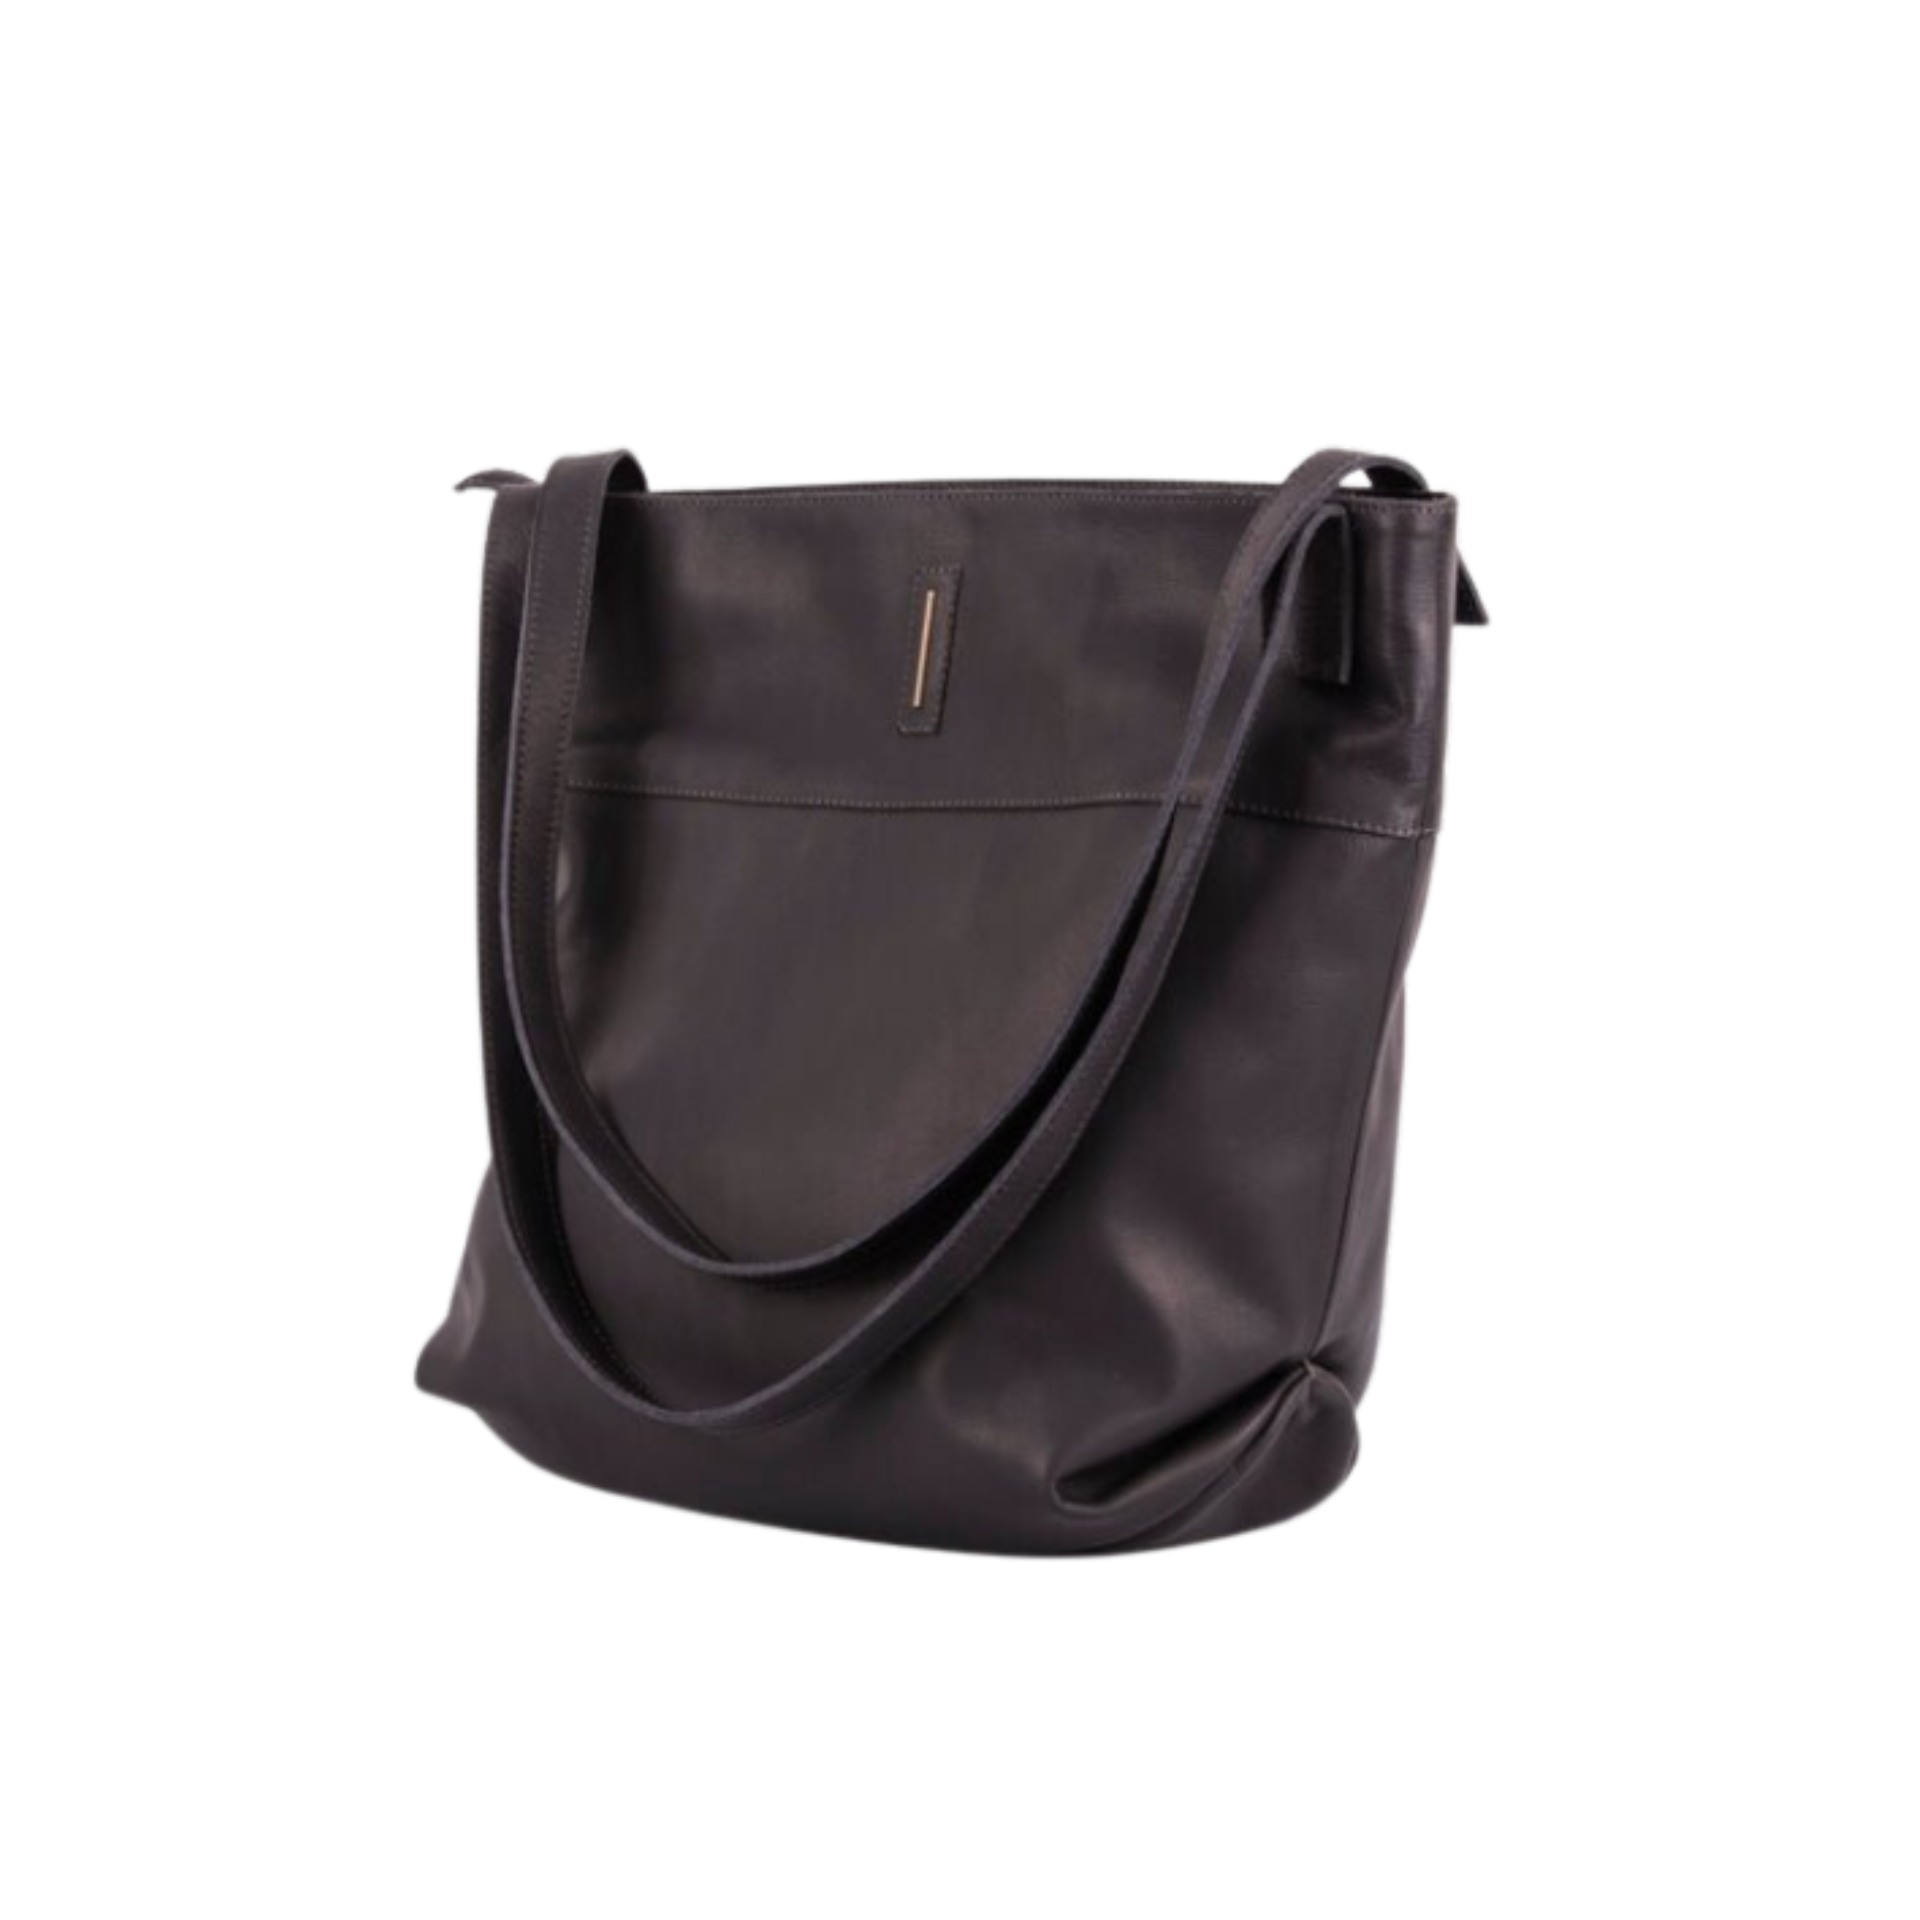 Julie mousse dark gray - large shoulder bag in gray leather 